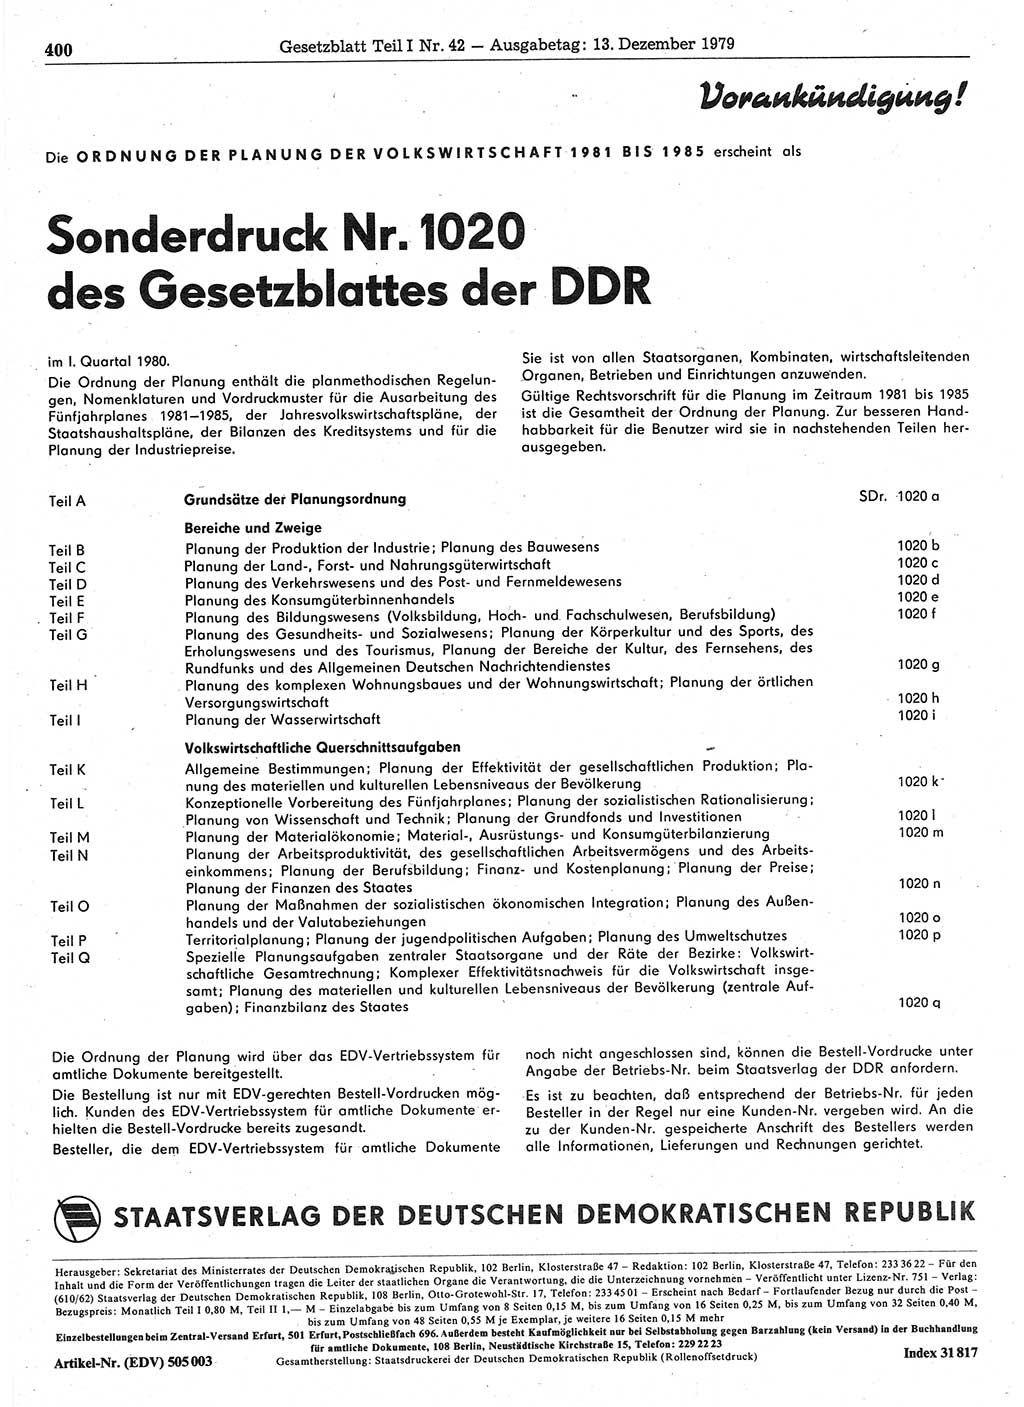 Gesetzblatt (GBl.) der Deutschen Demokratischen Republik (DDR) Teil Ⅰ 1979, Seite 400 (GBl. DDR Ⅰ 1979, S. 400)